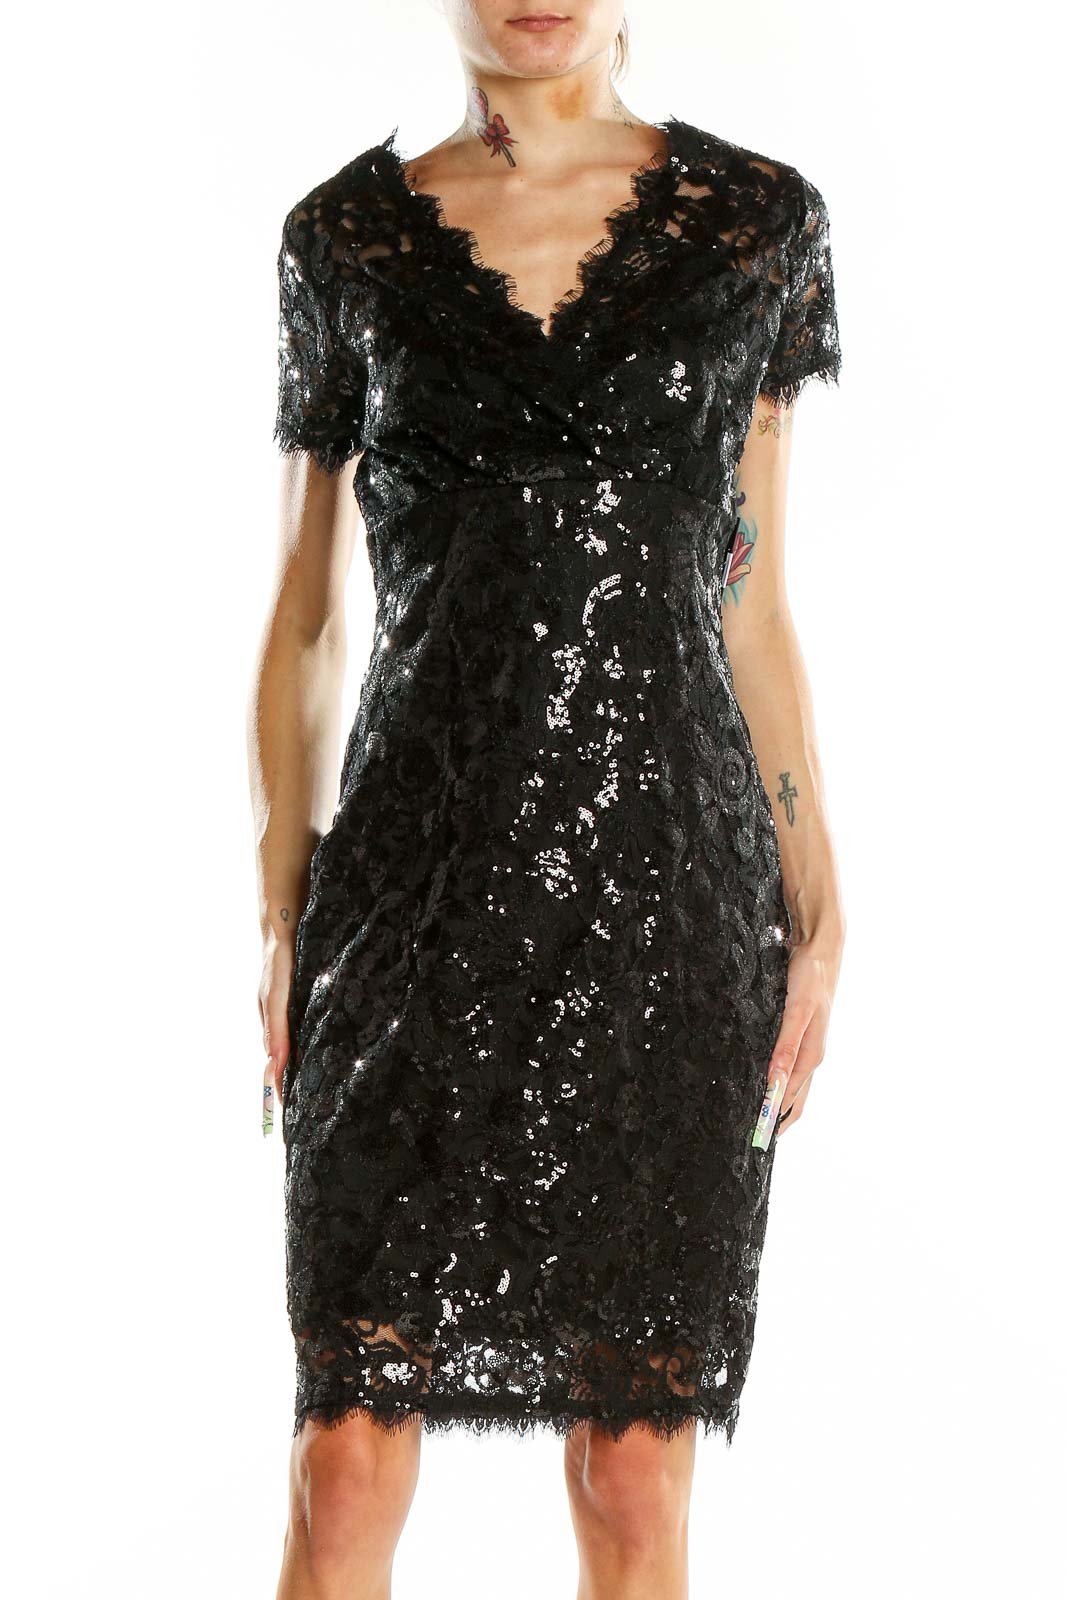 Black Lace Sequin Party Dress Front